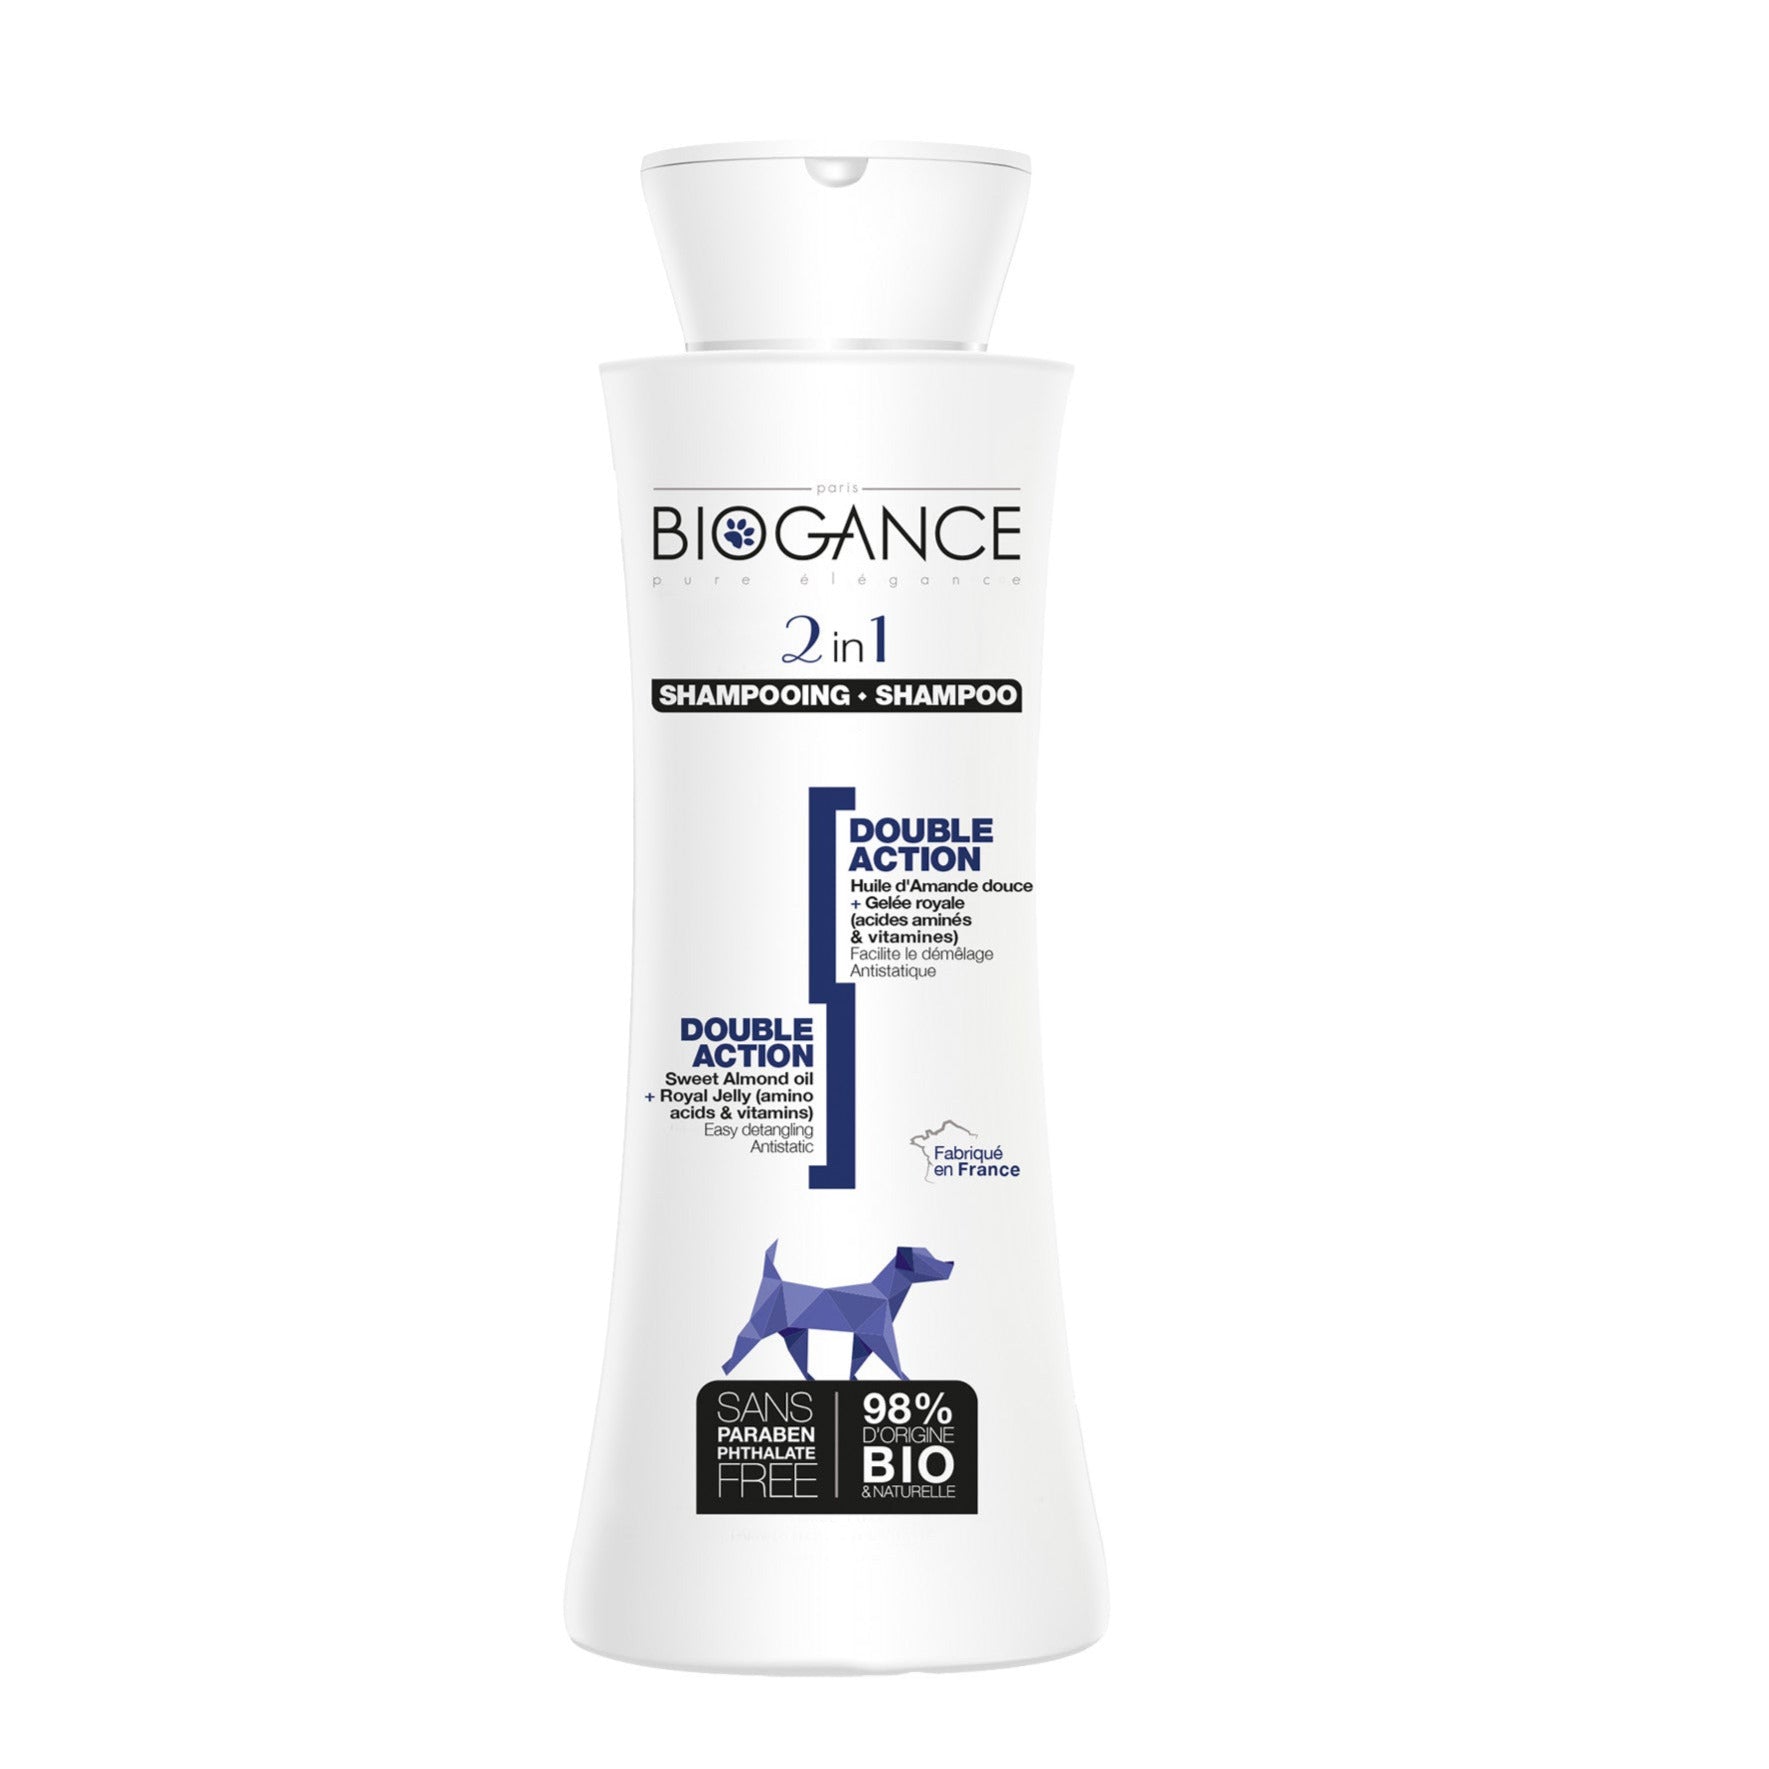 BIOGANCE shampoo 2 in 1 250ml - Pip & Pepper by Dierenspeciaalzaak Huysmans